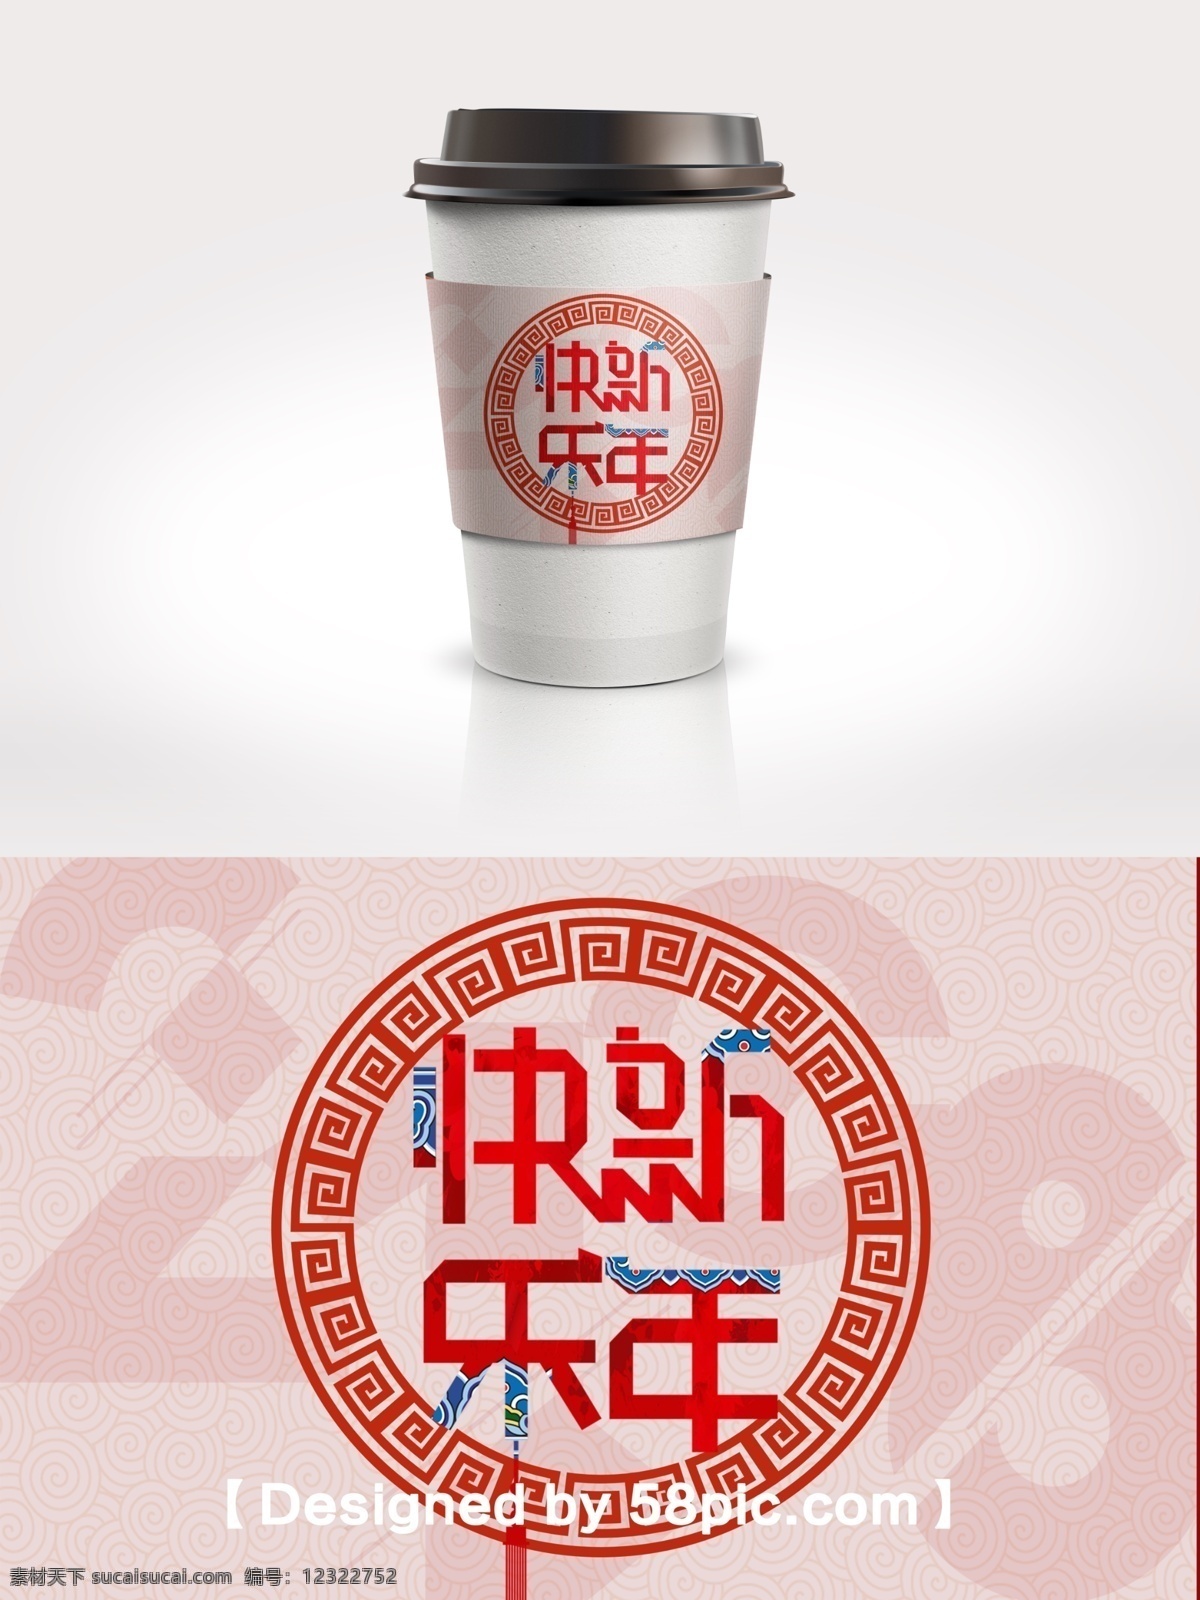 简约 大气 中国 风 新春 新年 快乐 咖啡杯 套 psd素材 广告设计模版 简约大气 节日包装 咖啡杯套设计 新年快乐 中国风